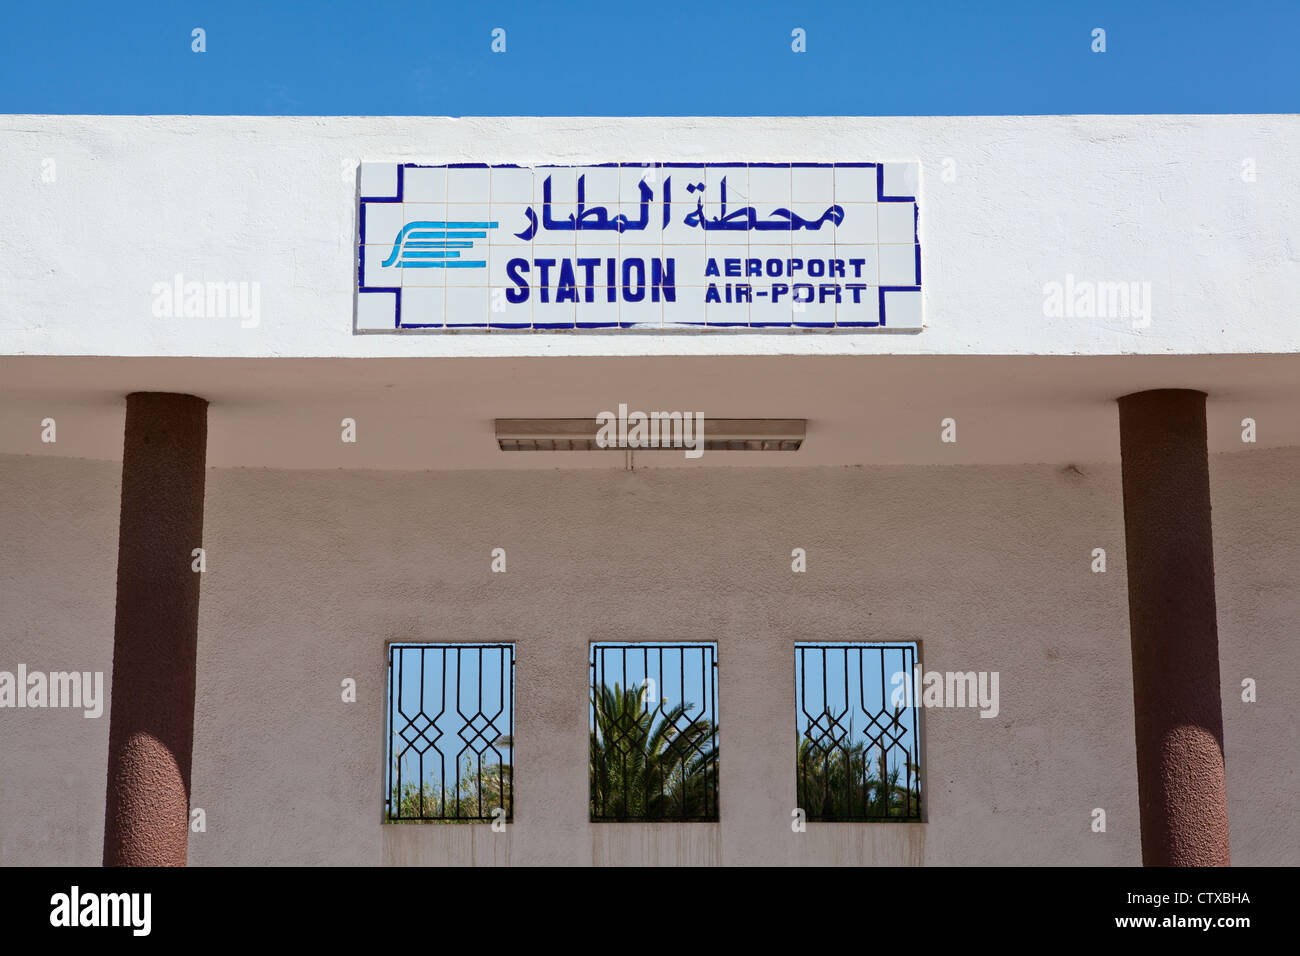 "L'aeroporto internazionale di stazione" della piastra sulla parete della stazione. Inglese e Arabo iscrizione sul bordo. Monastir, Tunisia5 Foto Stock